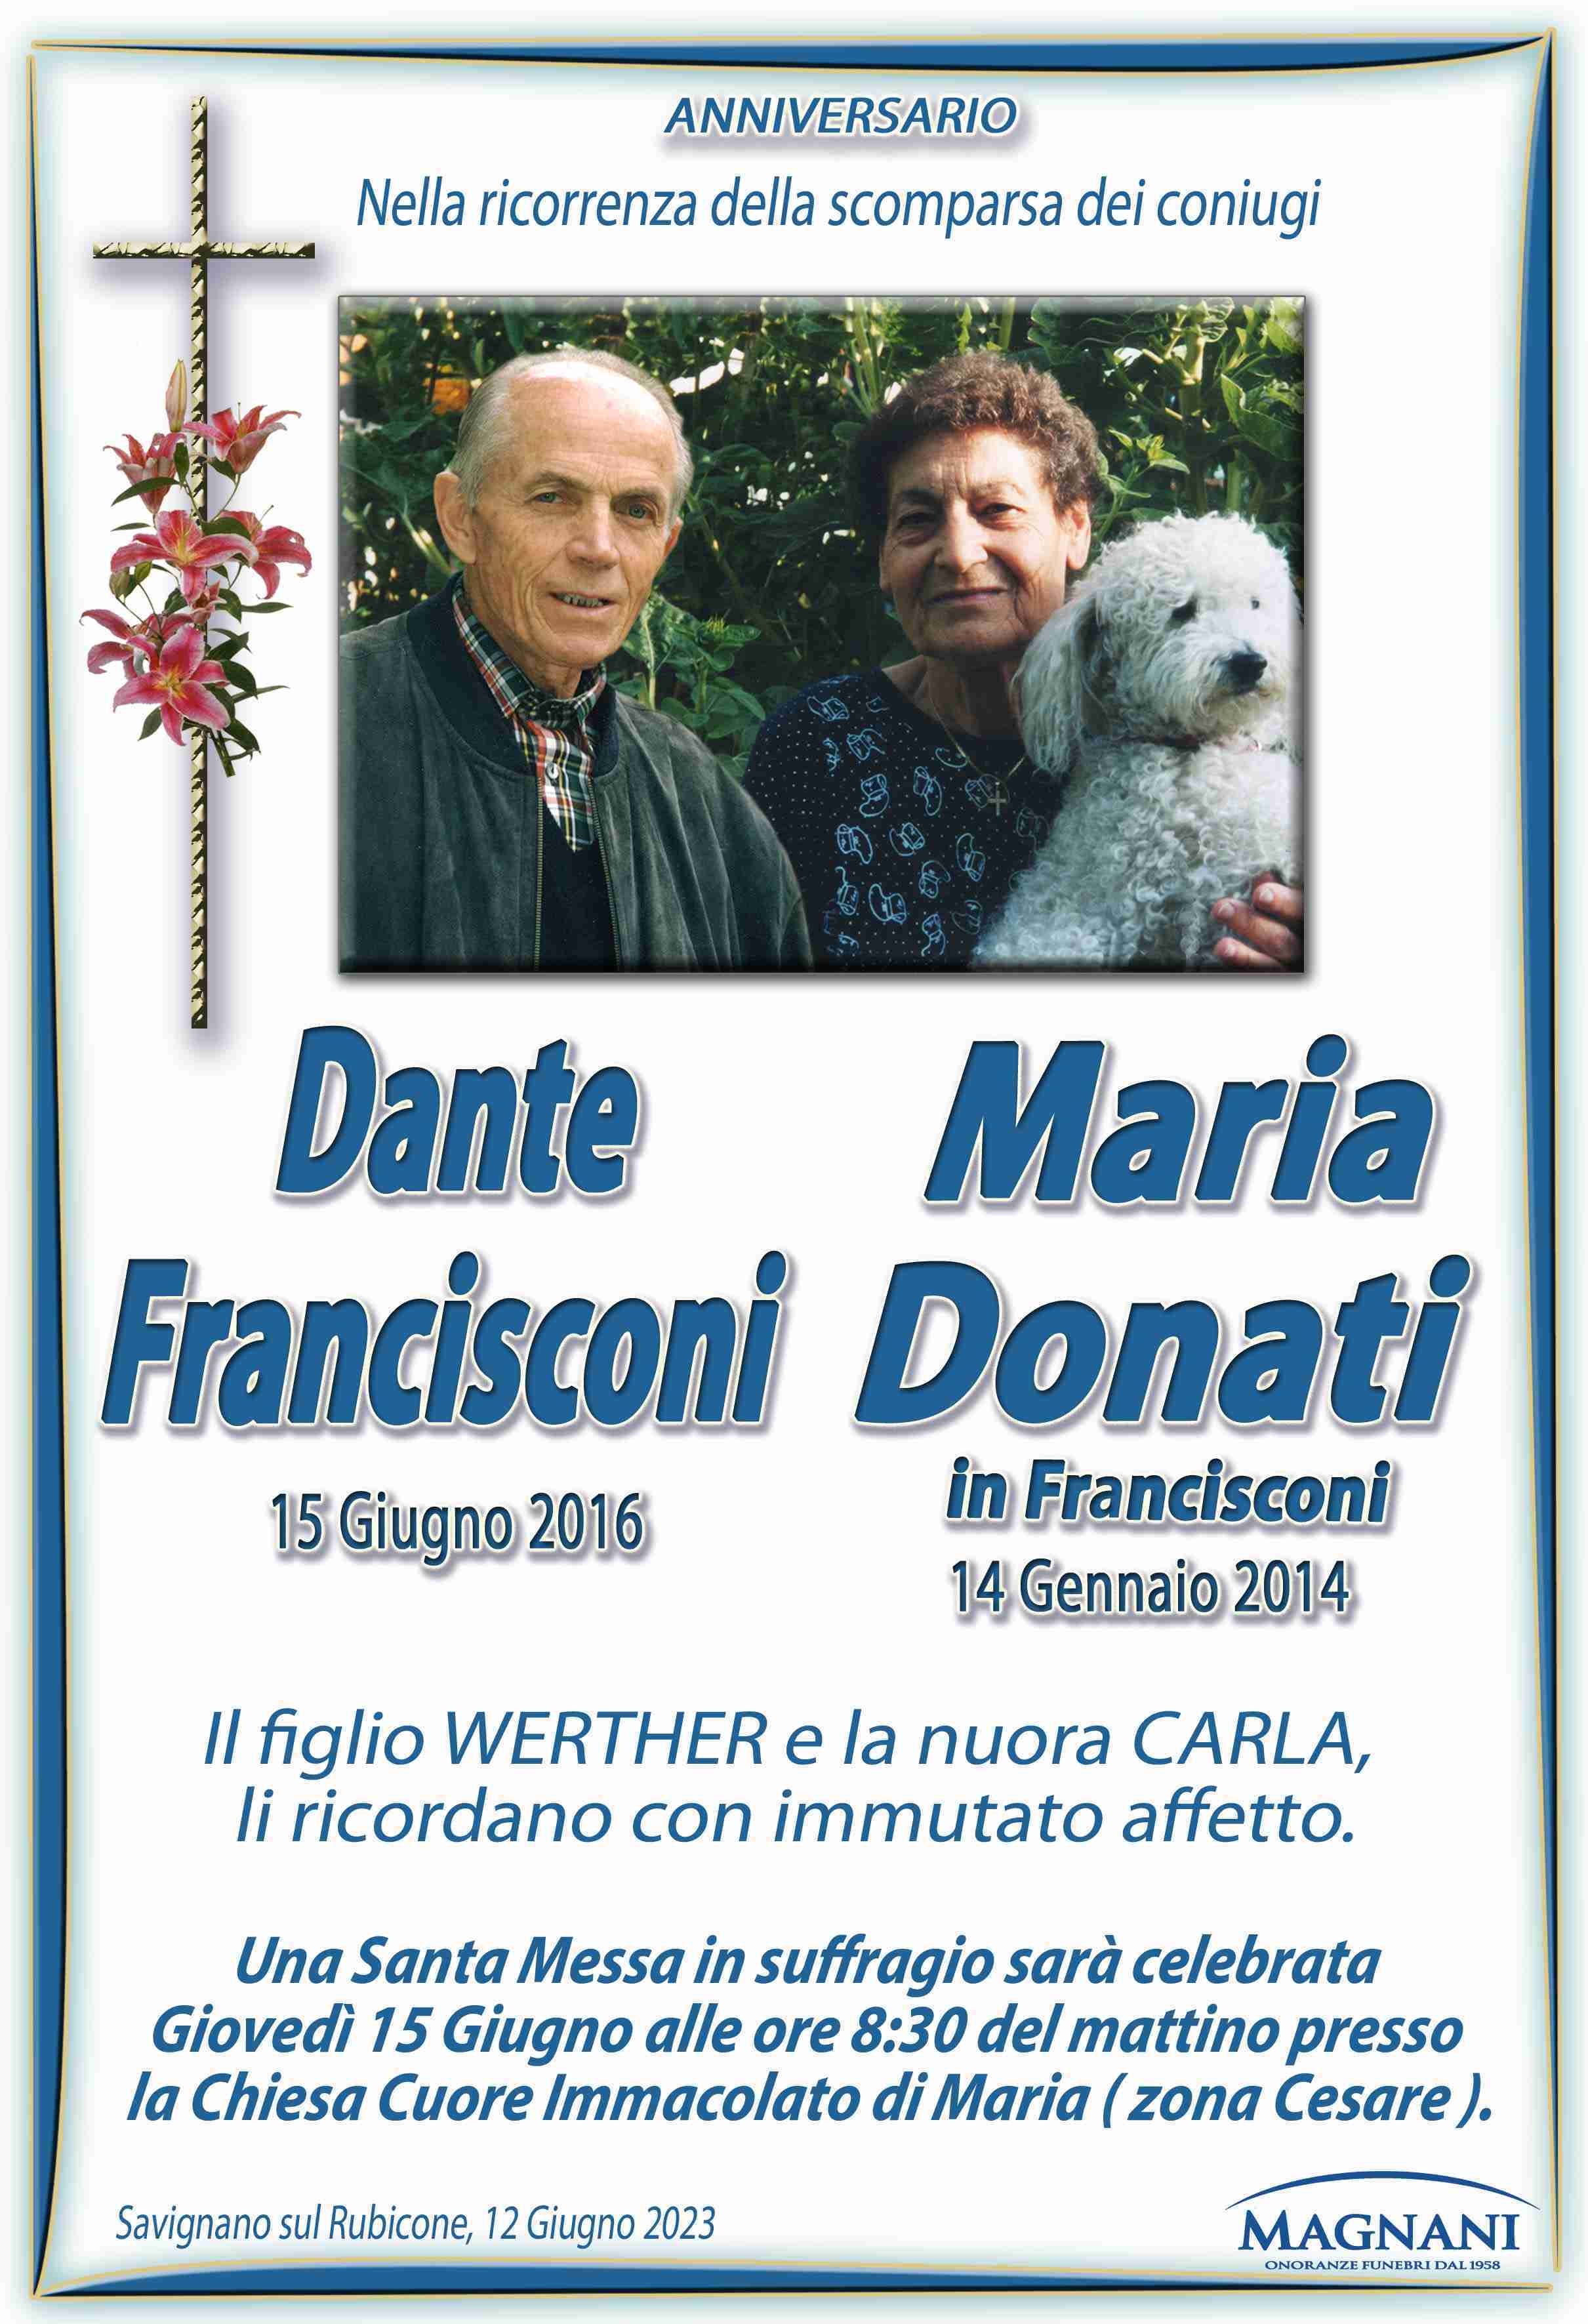 Coniugi Dante Francisconi e Maria Donati